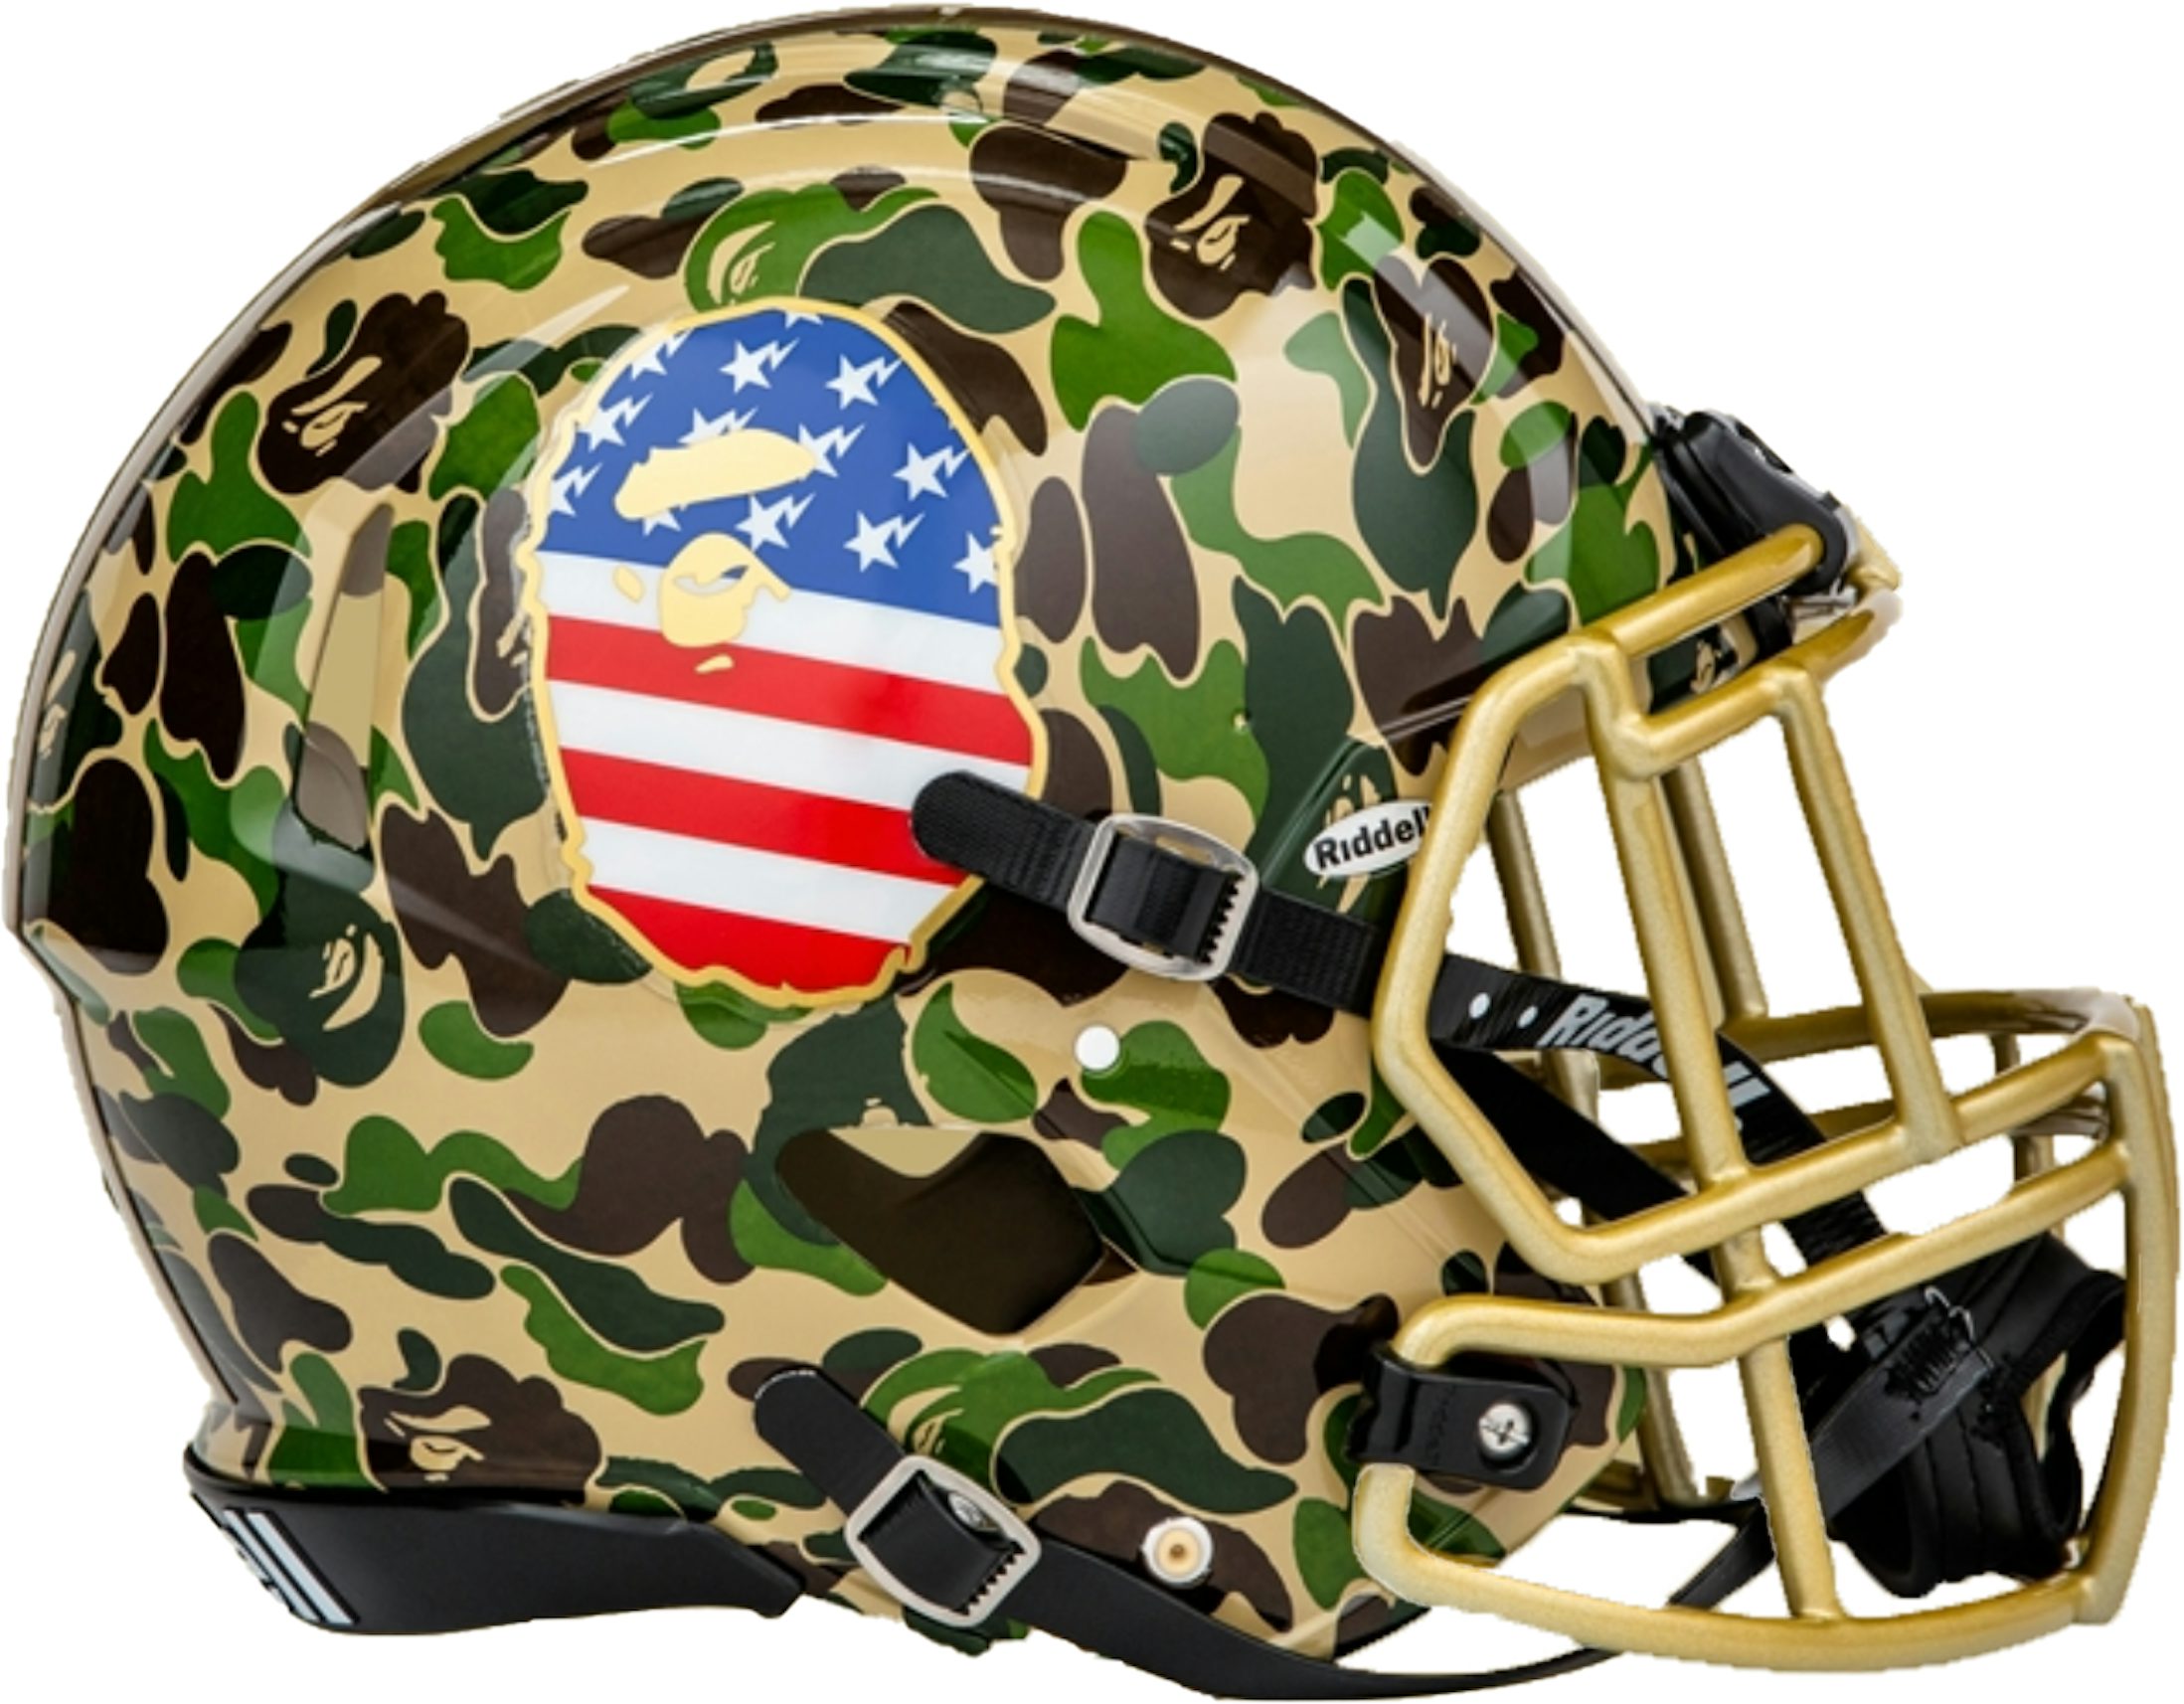 BAPE x Adidas Riddell Helmet Green Men's - SS19 - US